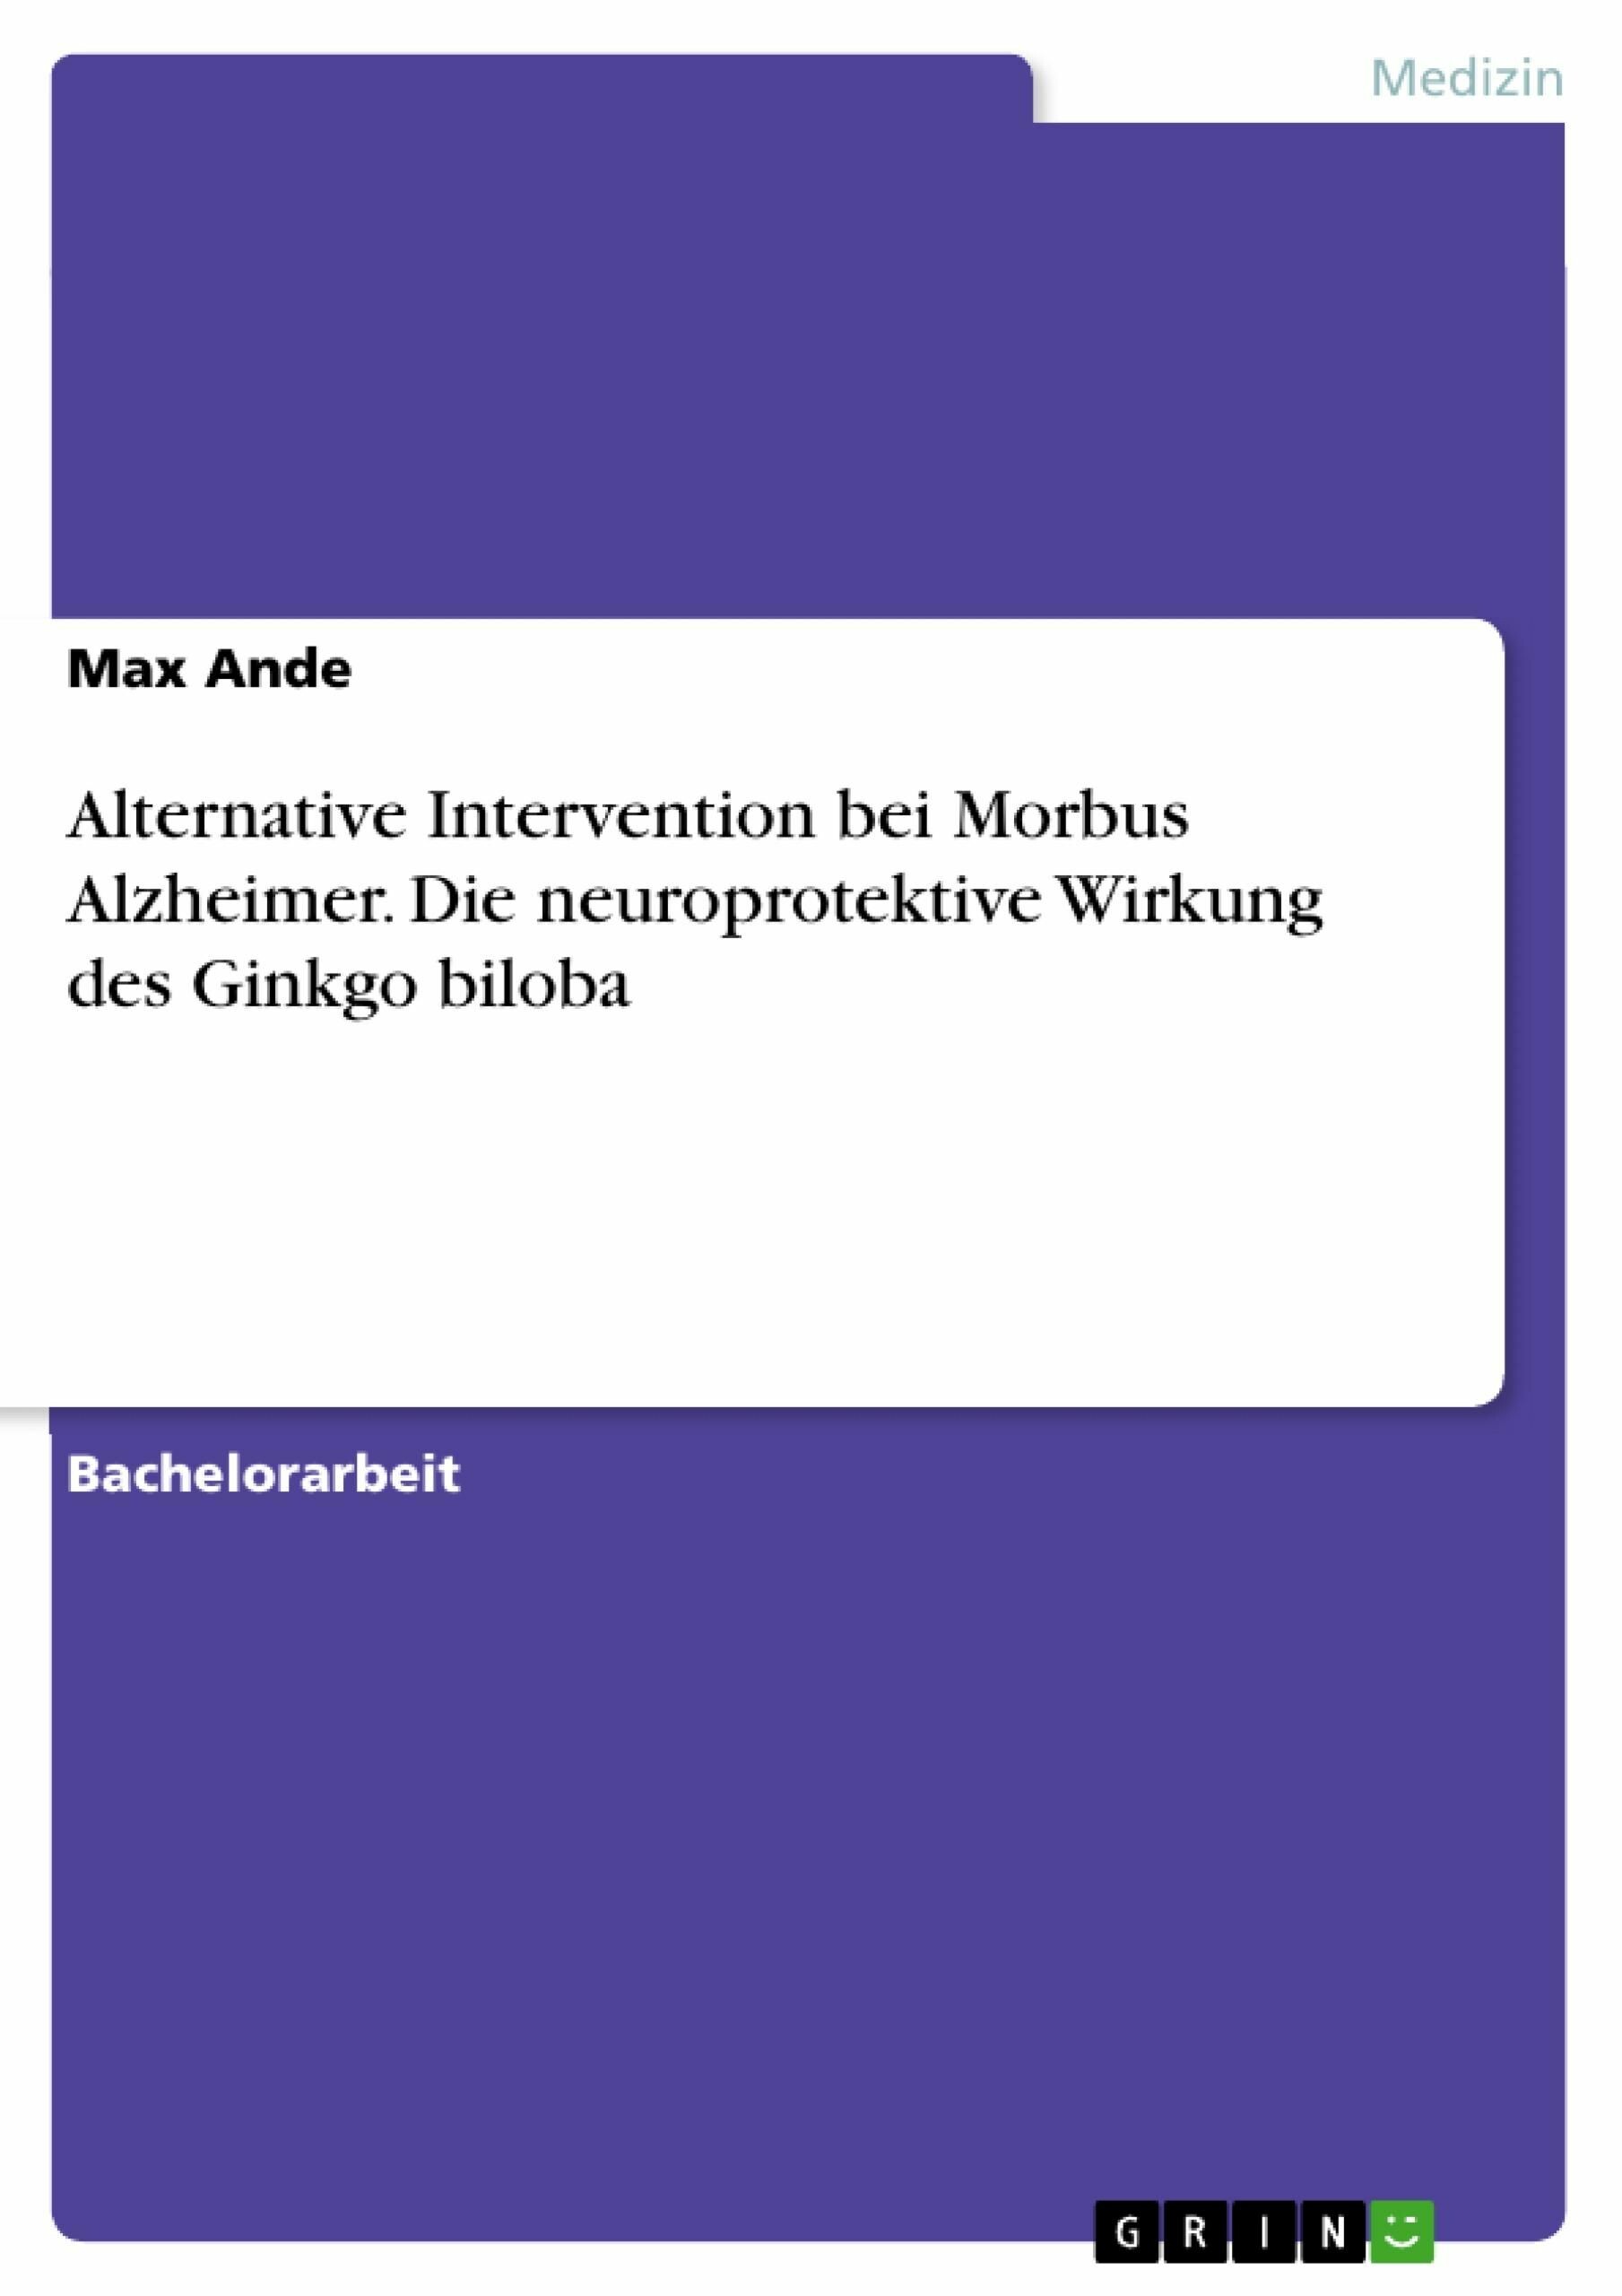 Alternative Intervention bei Morbus Alzheimer. Die neuroprotektive Wirkung des Ginkgo biloba